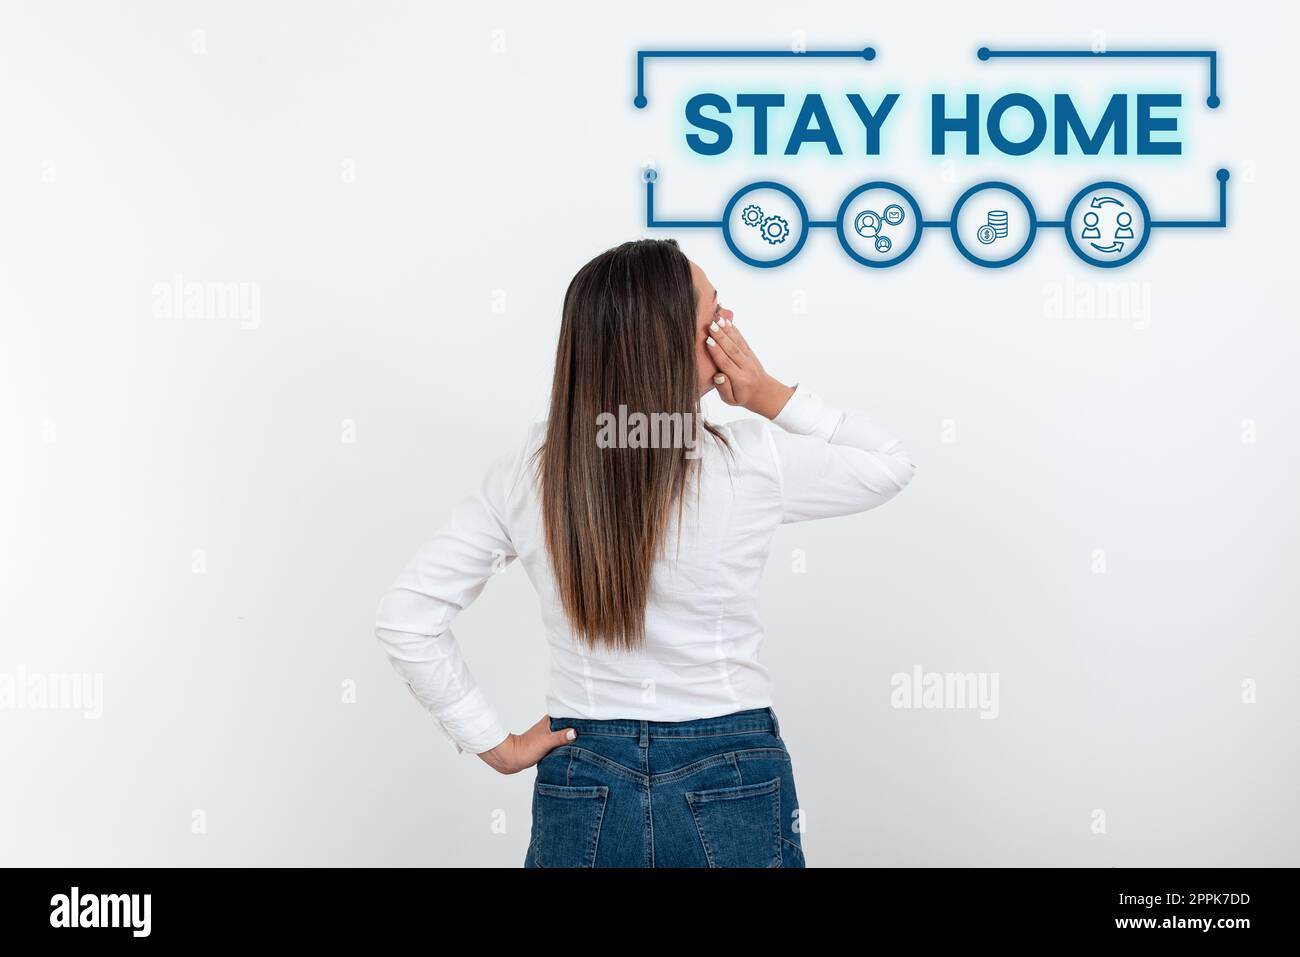 Textunterschrift für „Stay Home“. Geschäftsvorführung geht nicht für eine Aktivität raus und bleibt im Haus oder zu Hause Stockfoto